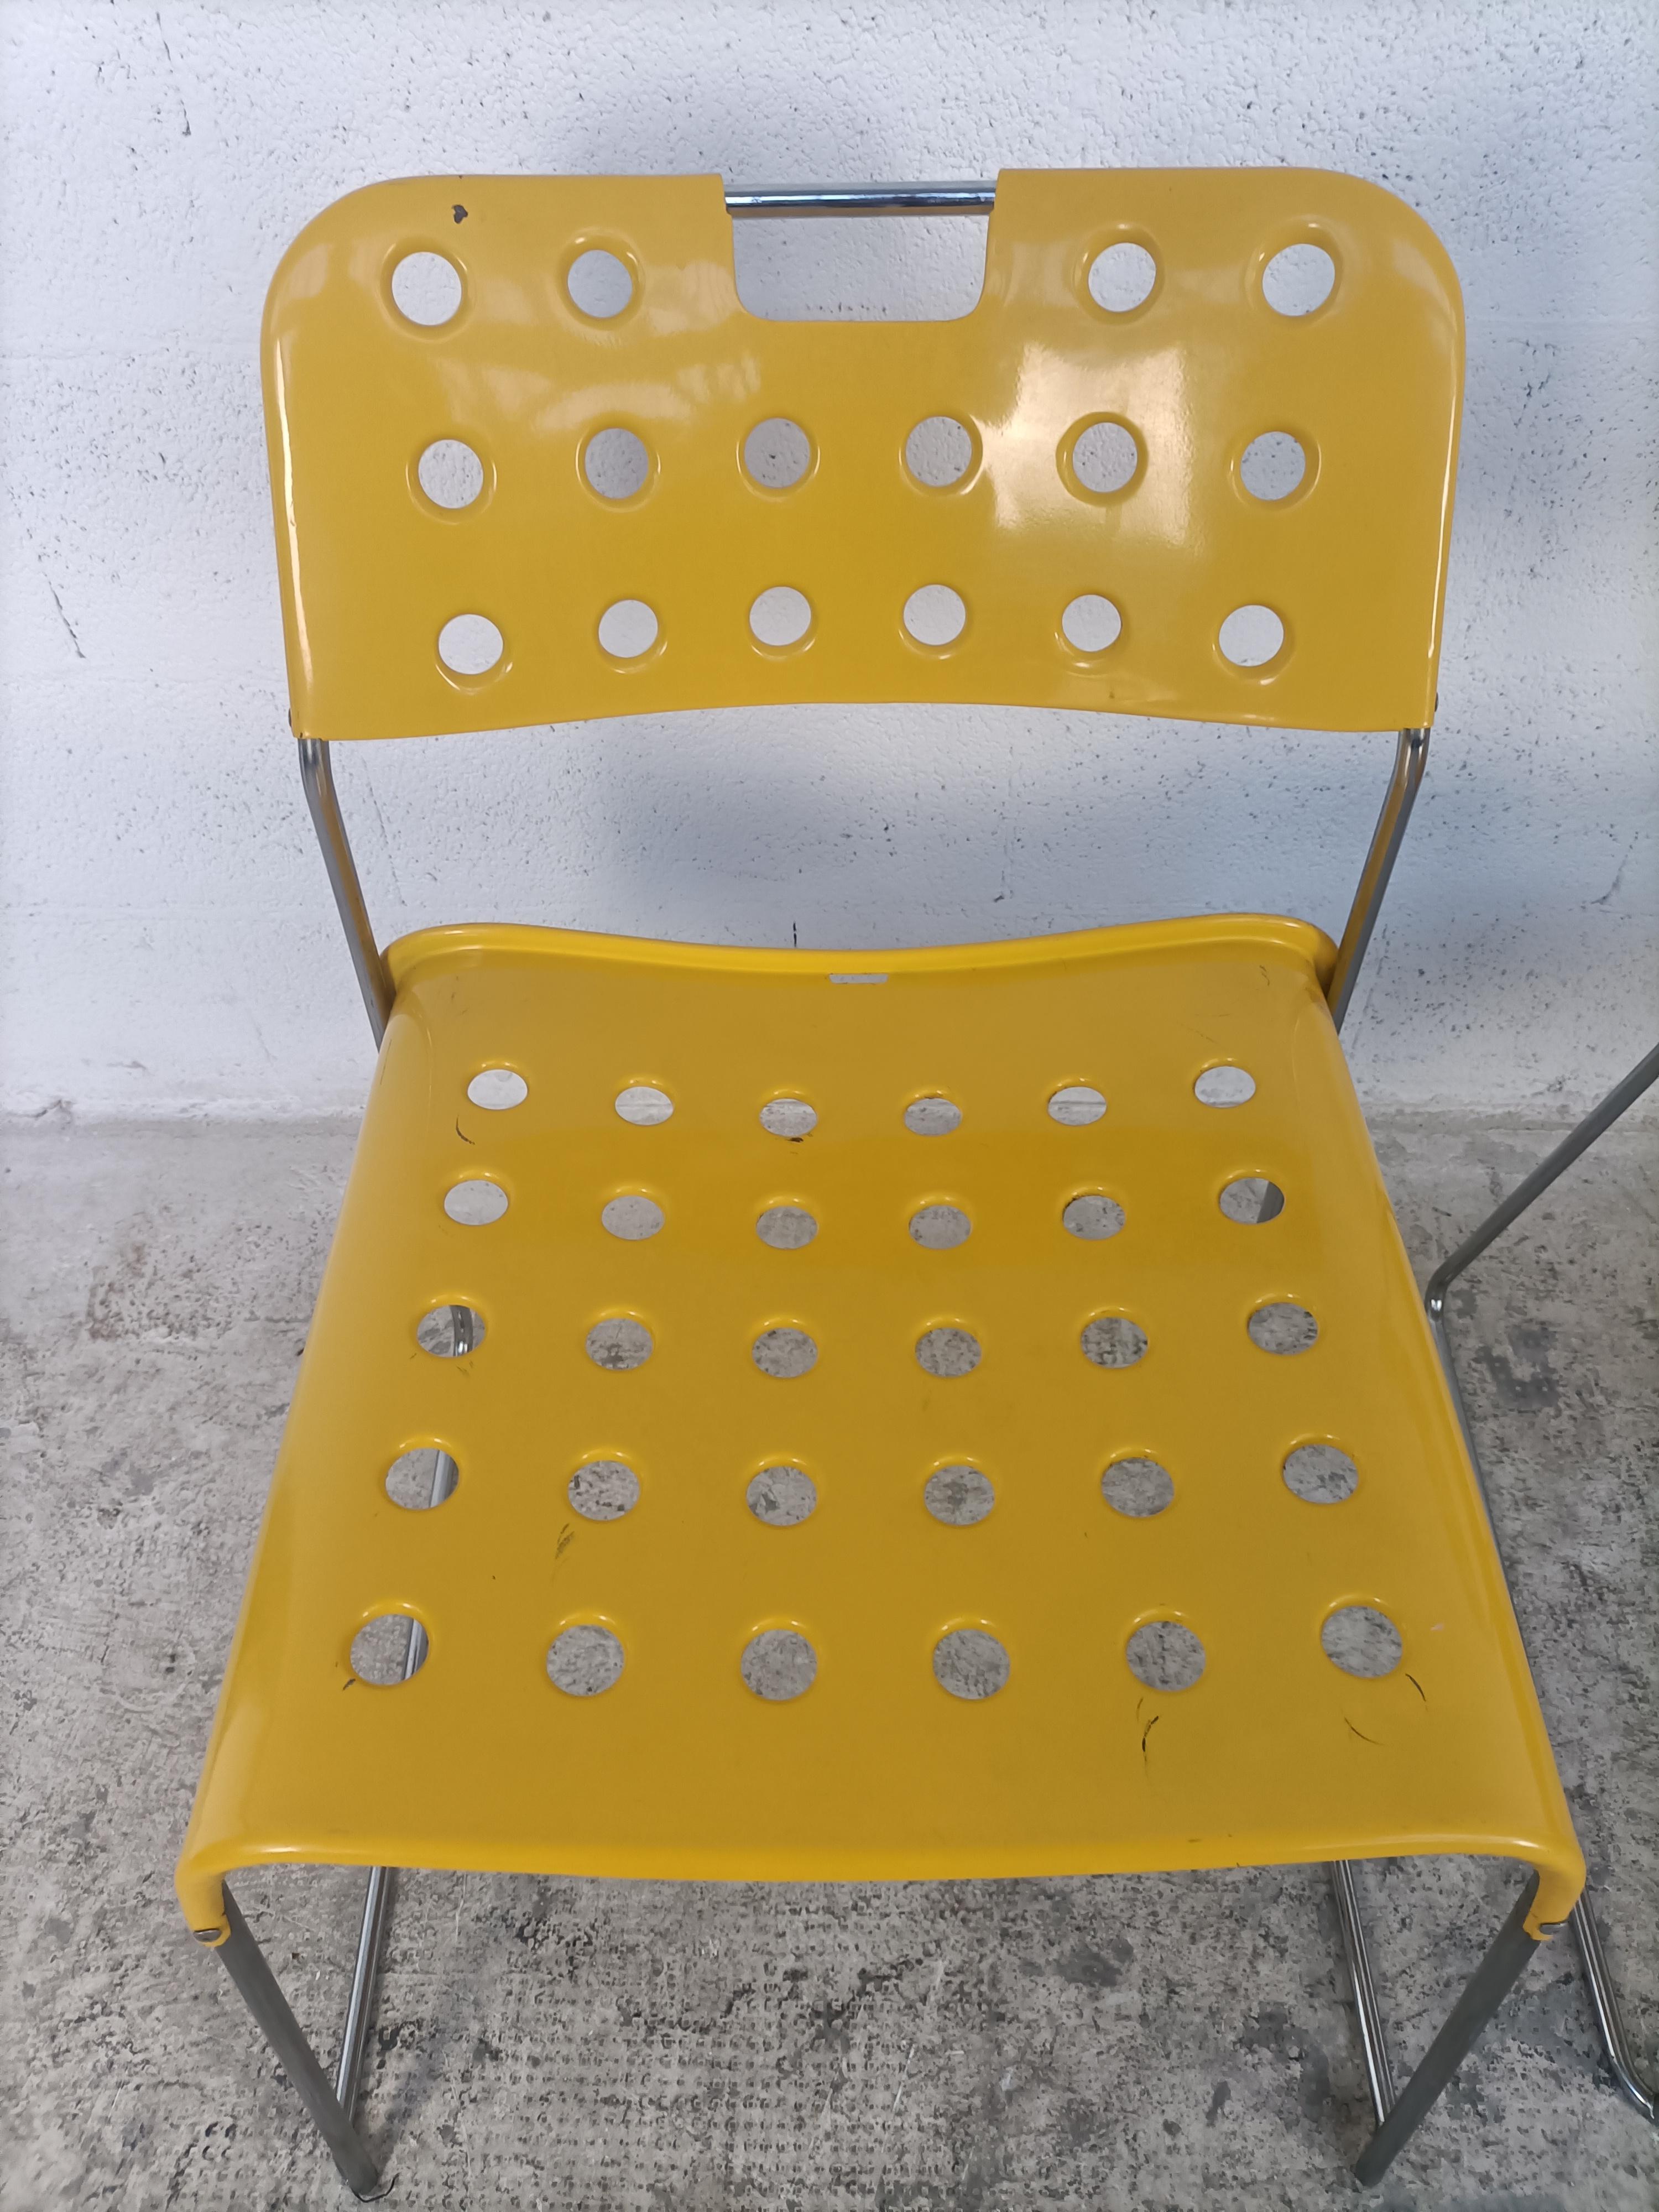 3 gelbe stapelbare Omkstak-Stühle von Rodney Kinsman für Bieffeplast, 70er-Jahre (Metall)